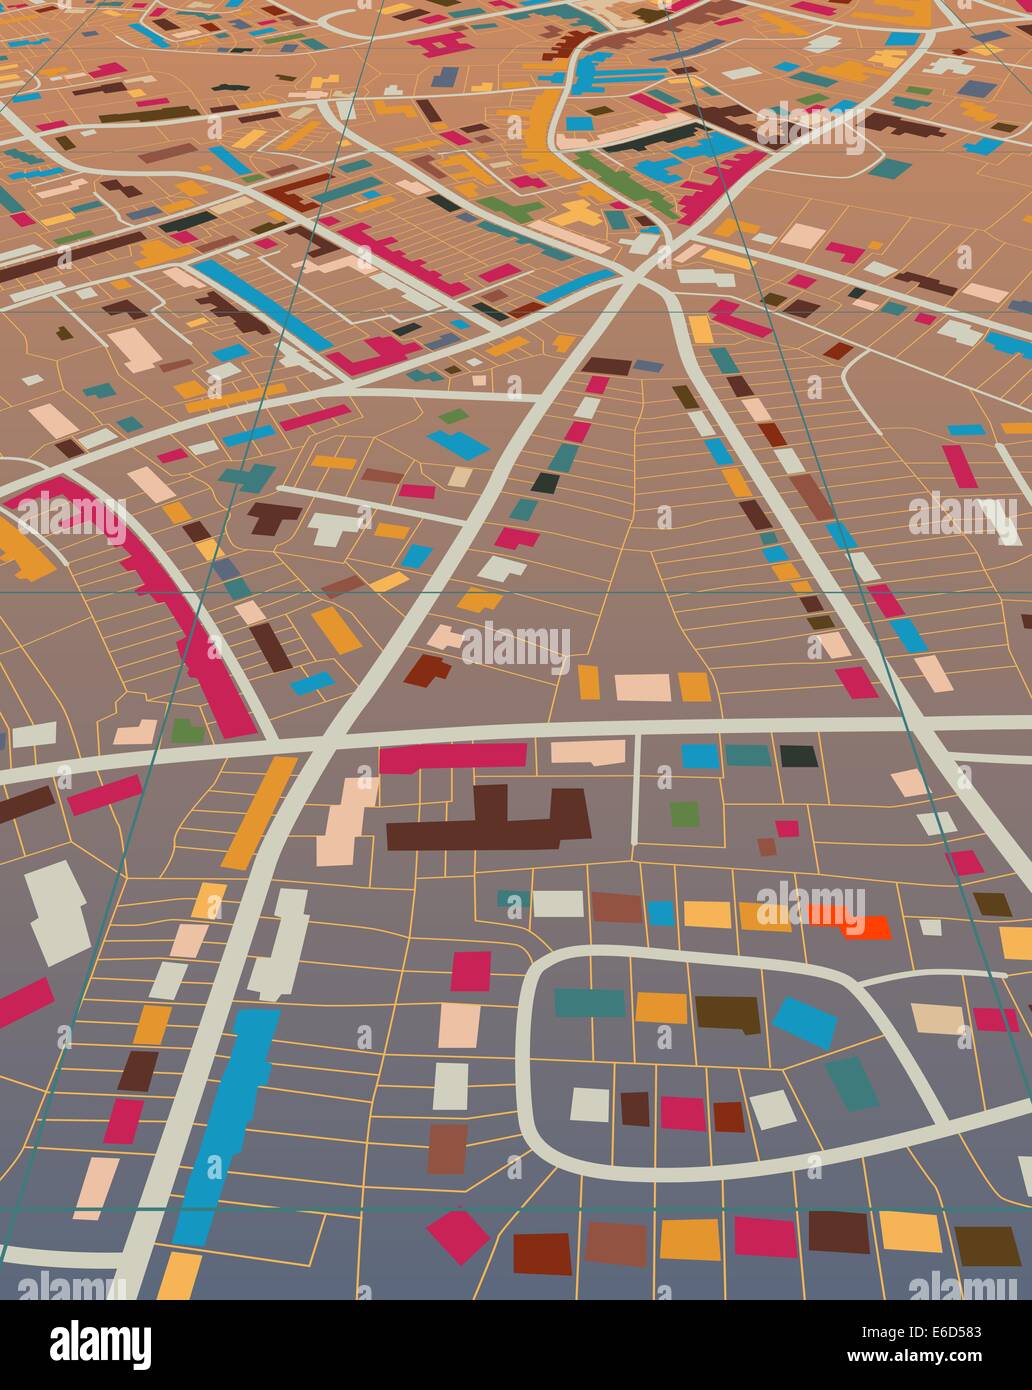 Illustrazione di un generico colorata mappa stradale senza nome Illustrazione Vettoriale